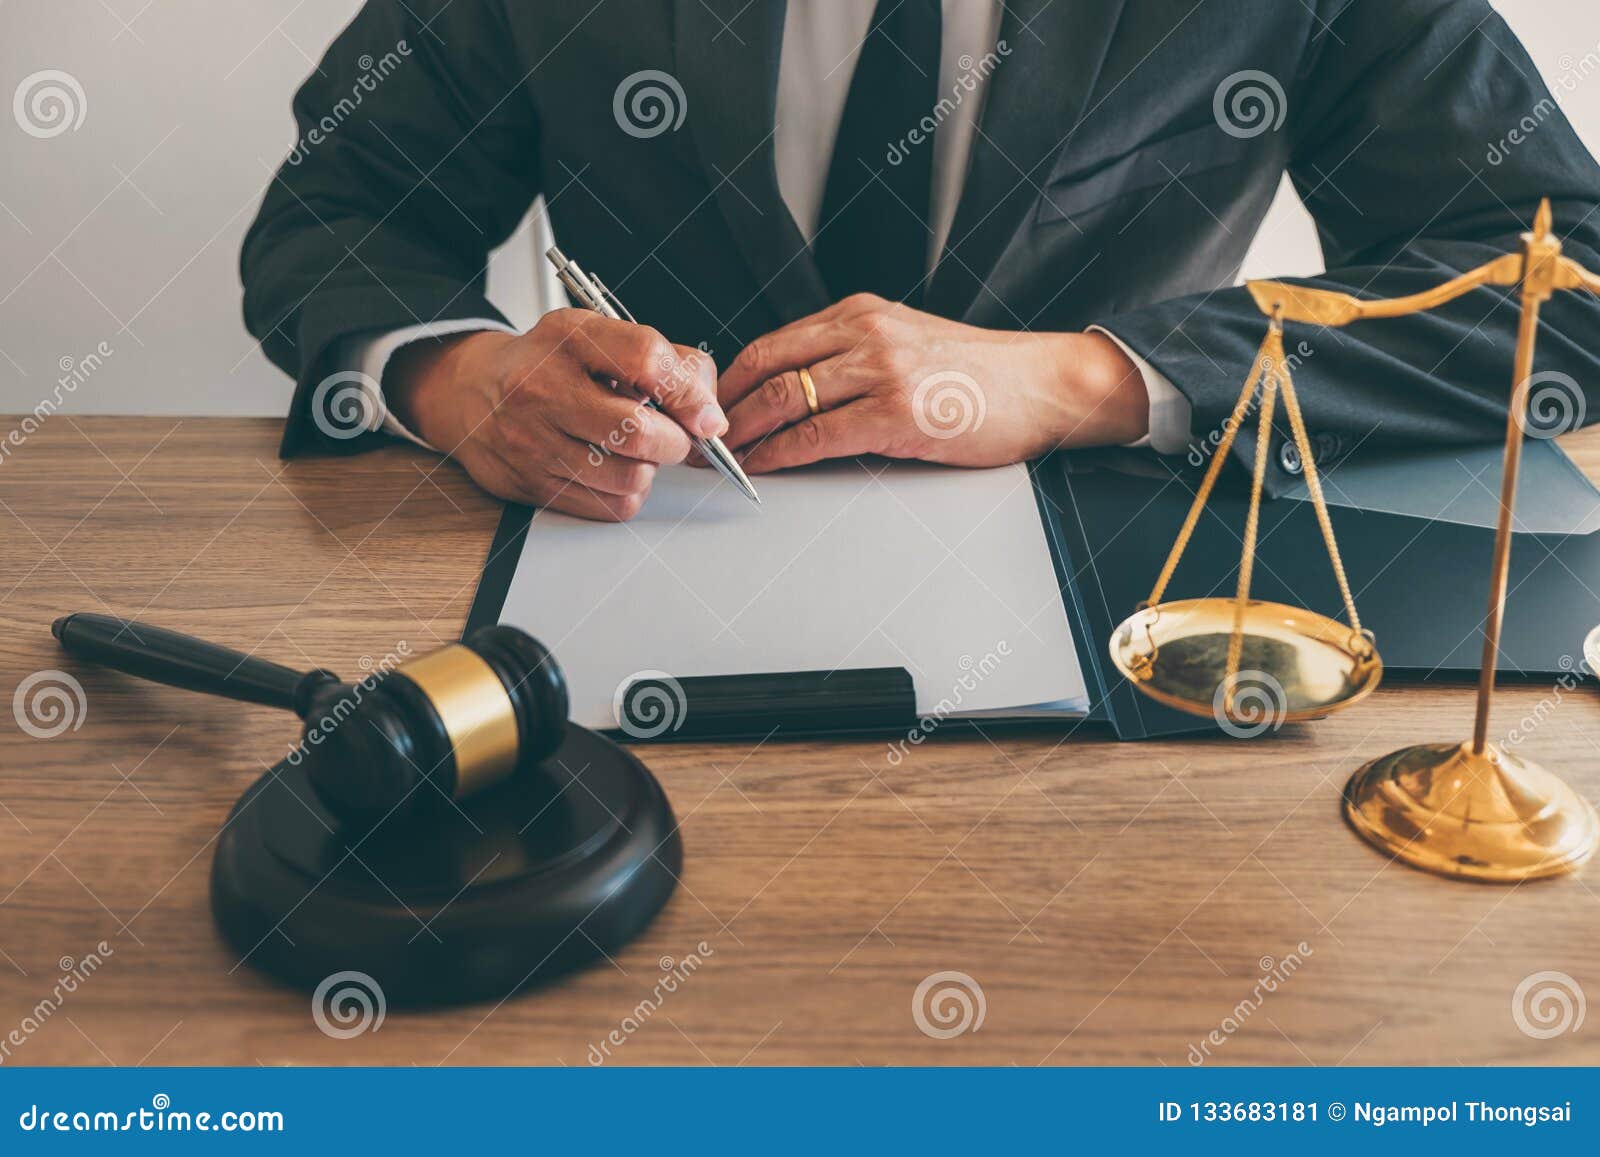 法律 律师律师和法官概念 男性律师或者公证员库存图片 图片包括有